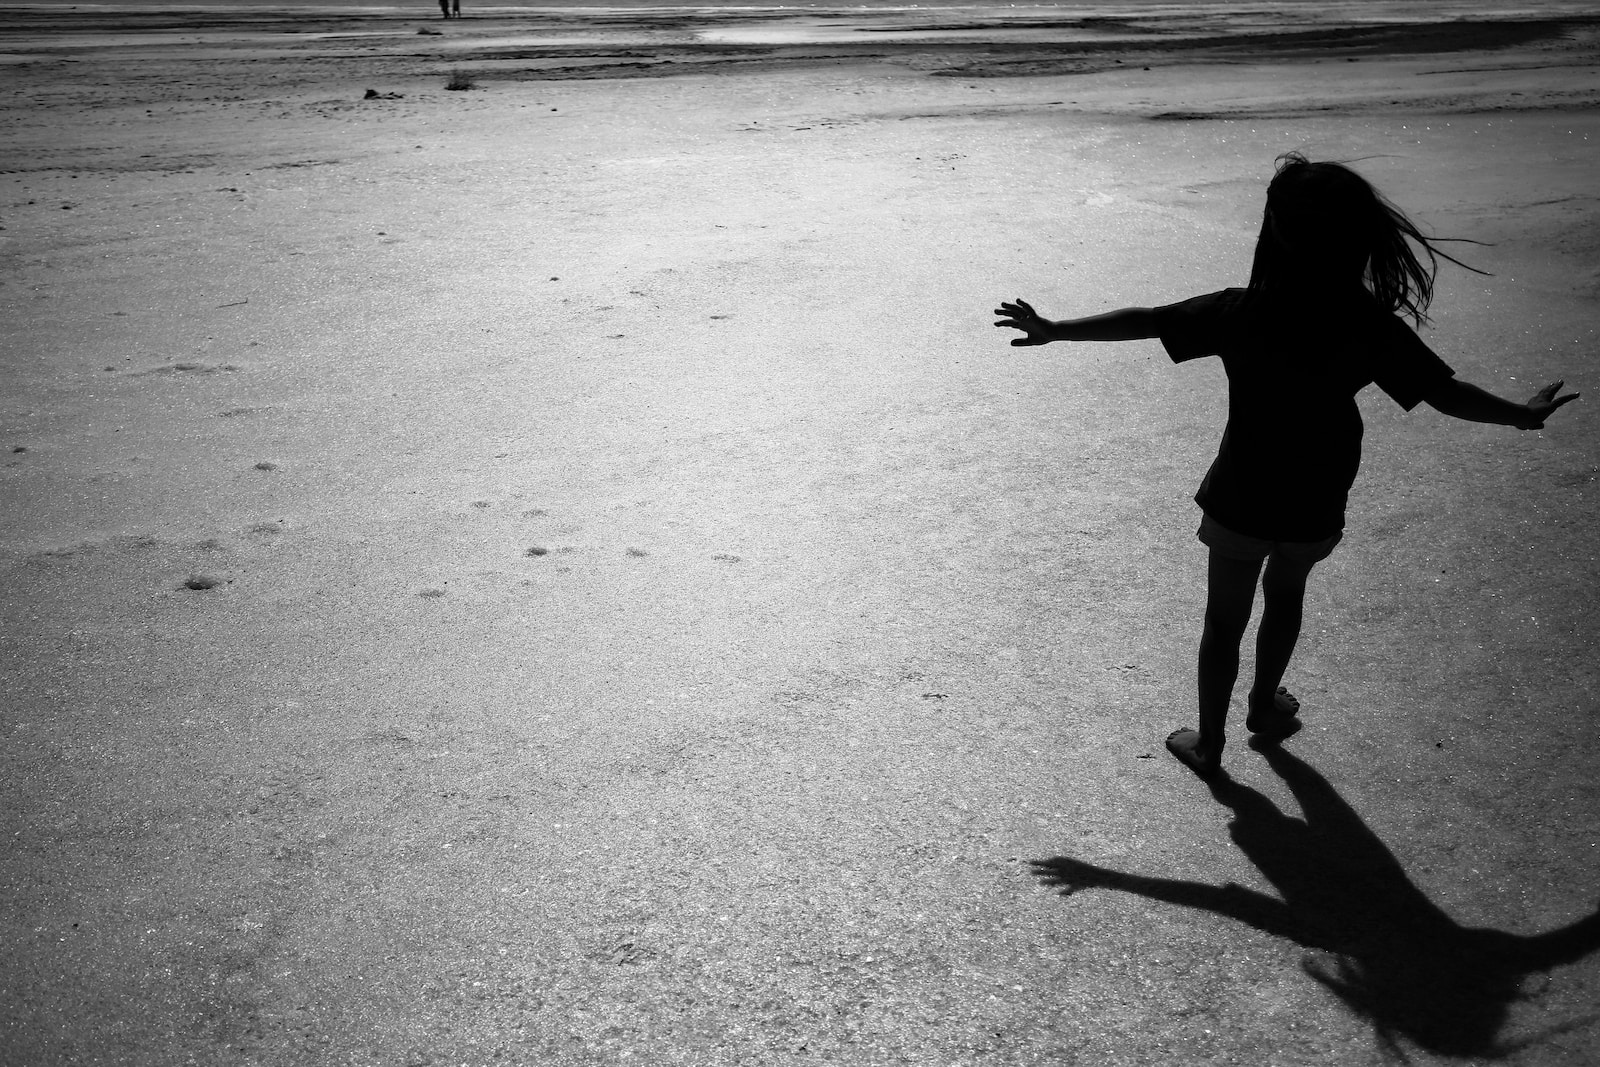 a little girl running across a sandy beach